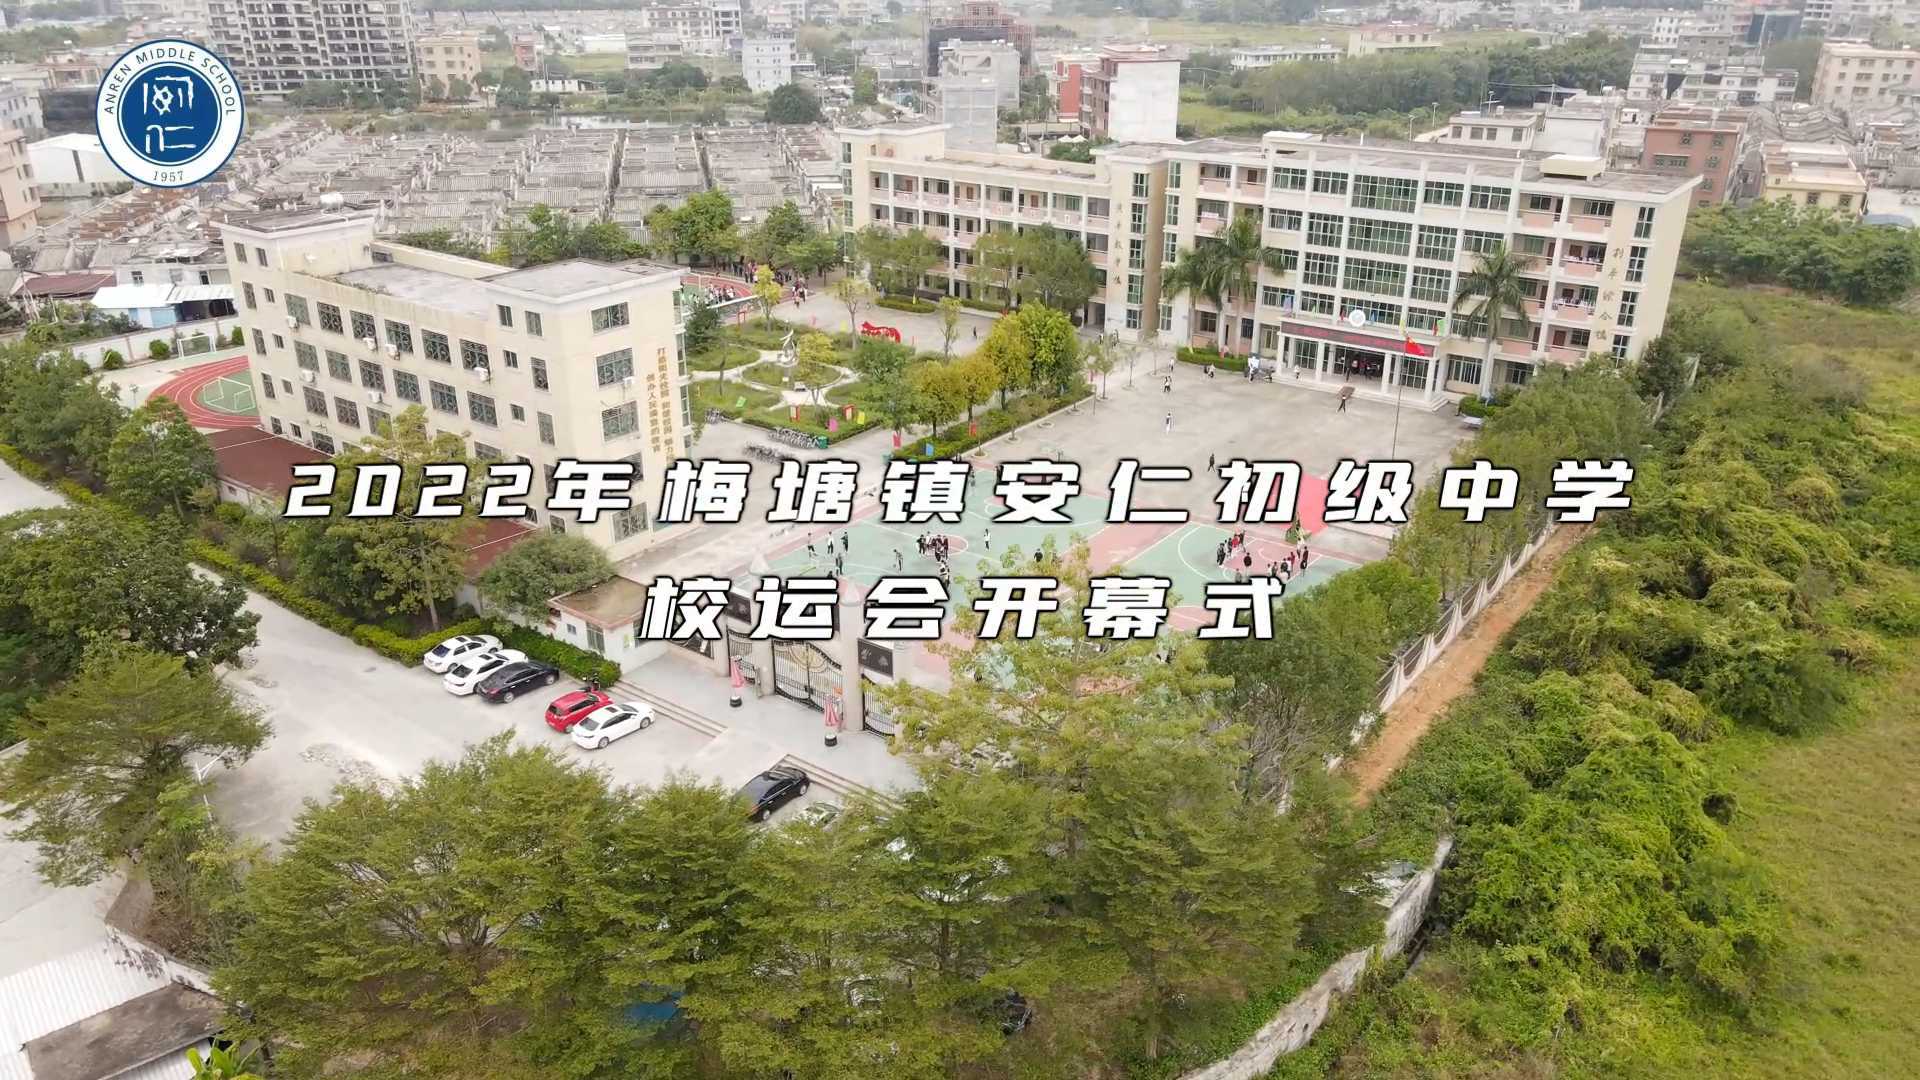 2022普宁市梅塘镇安仁中学校运会开幕式全程